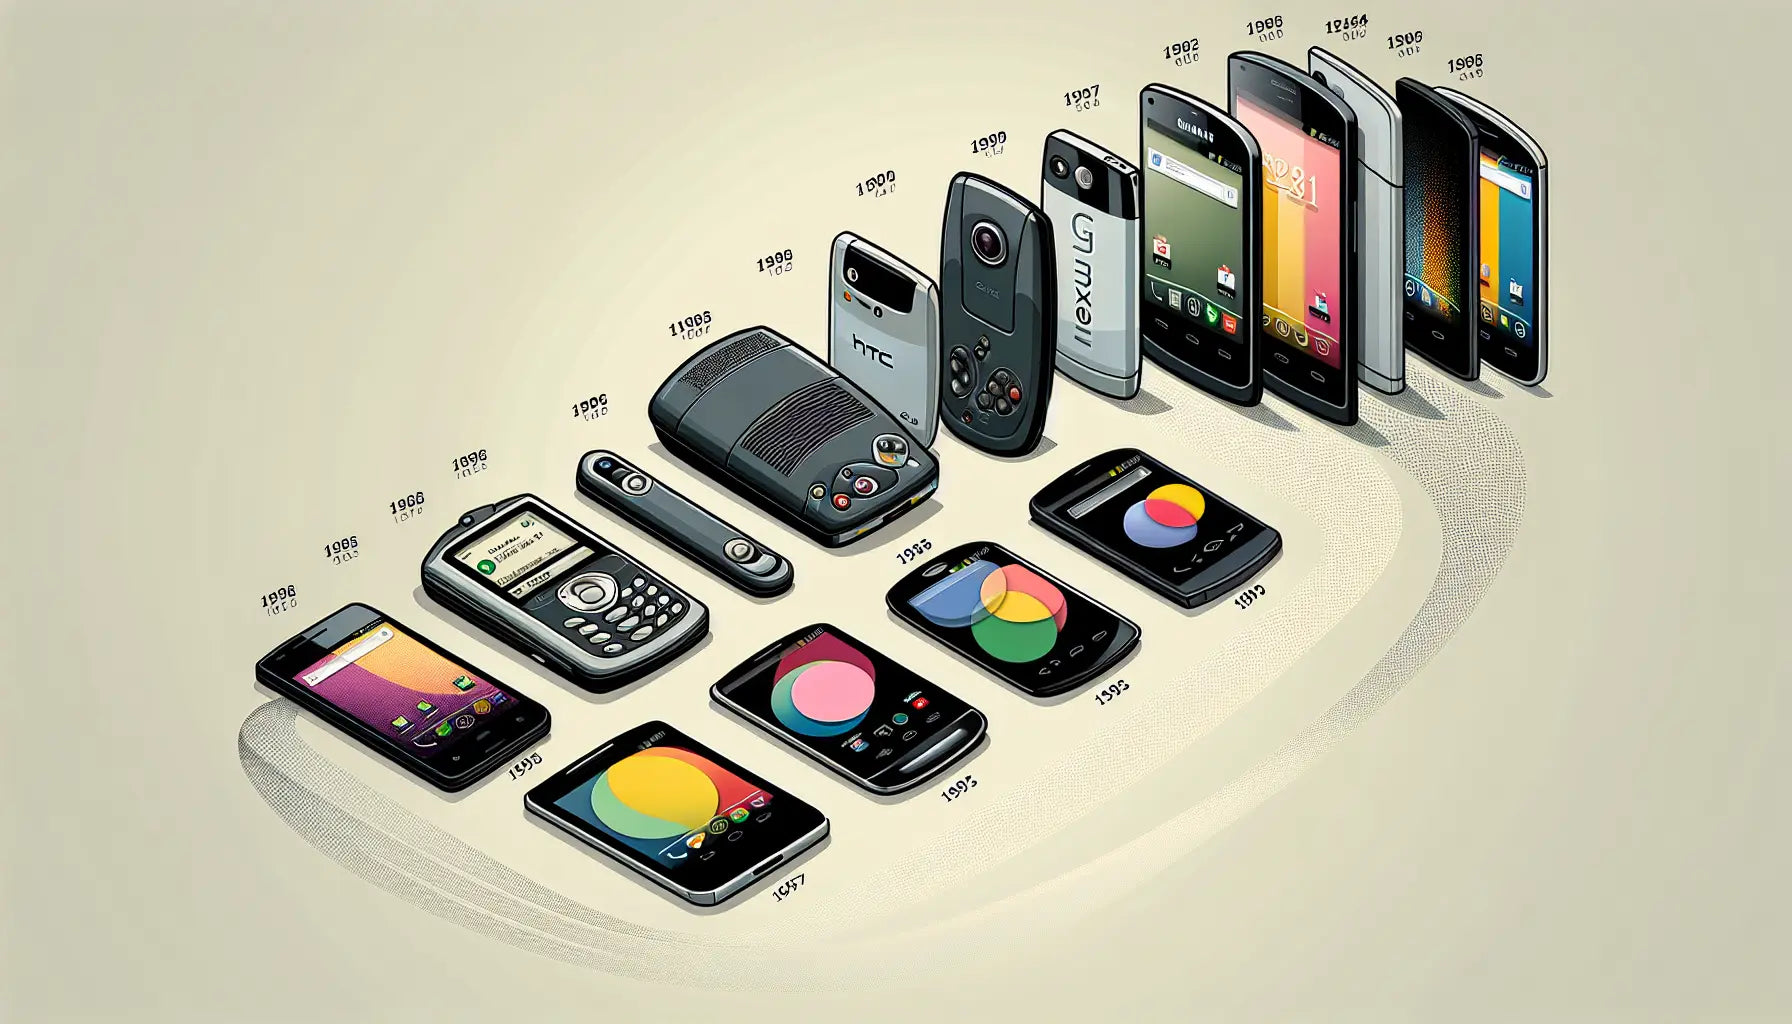 Evolution of Google Phones: From Nexus to Pixel